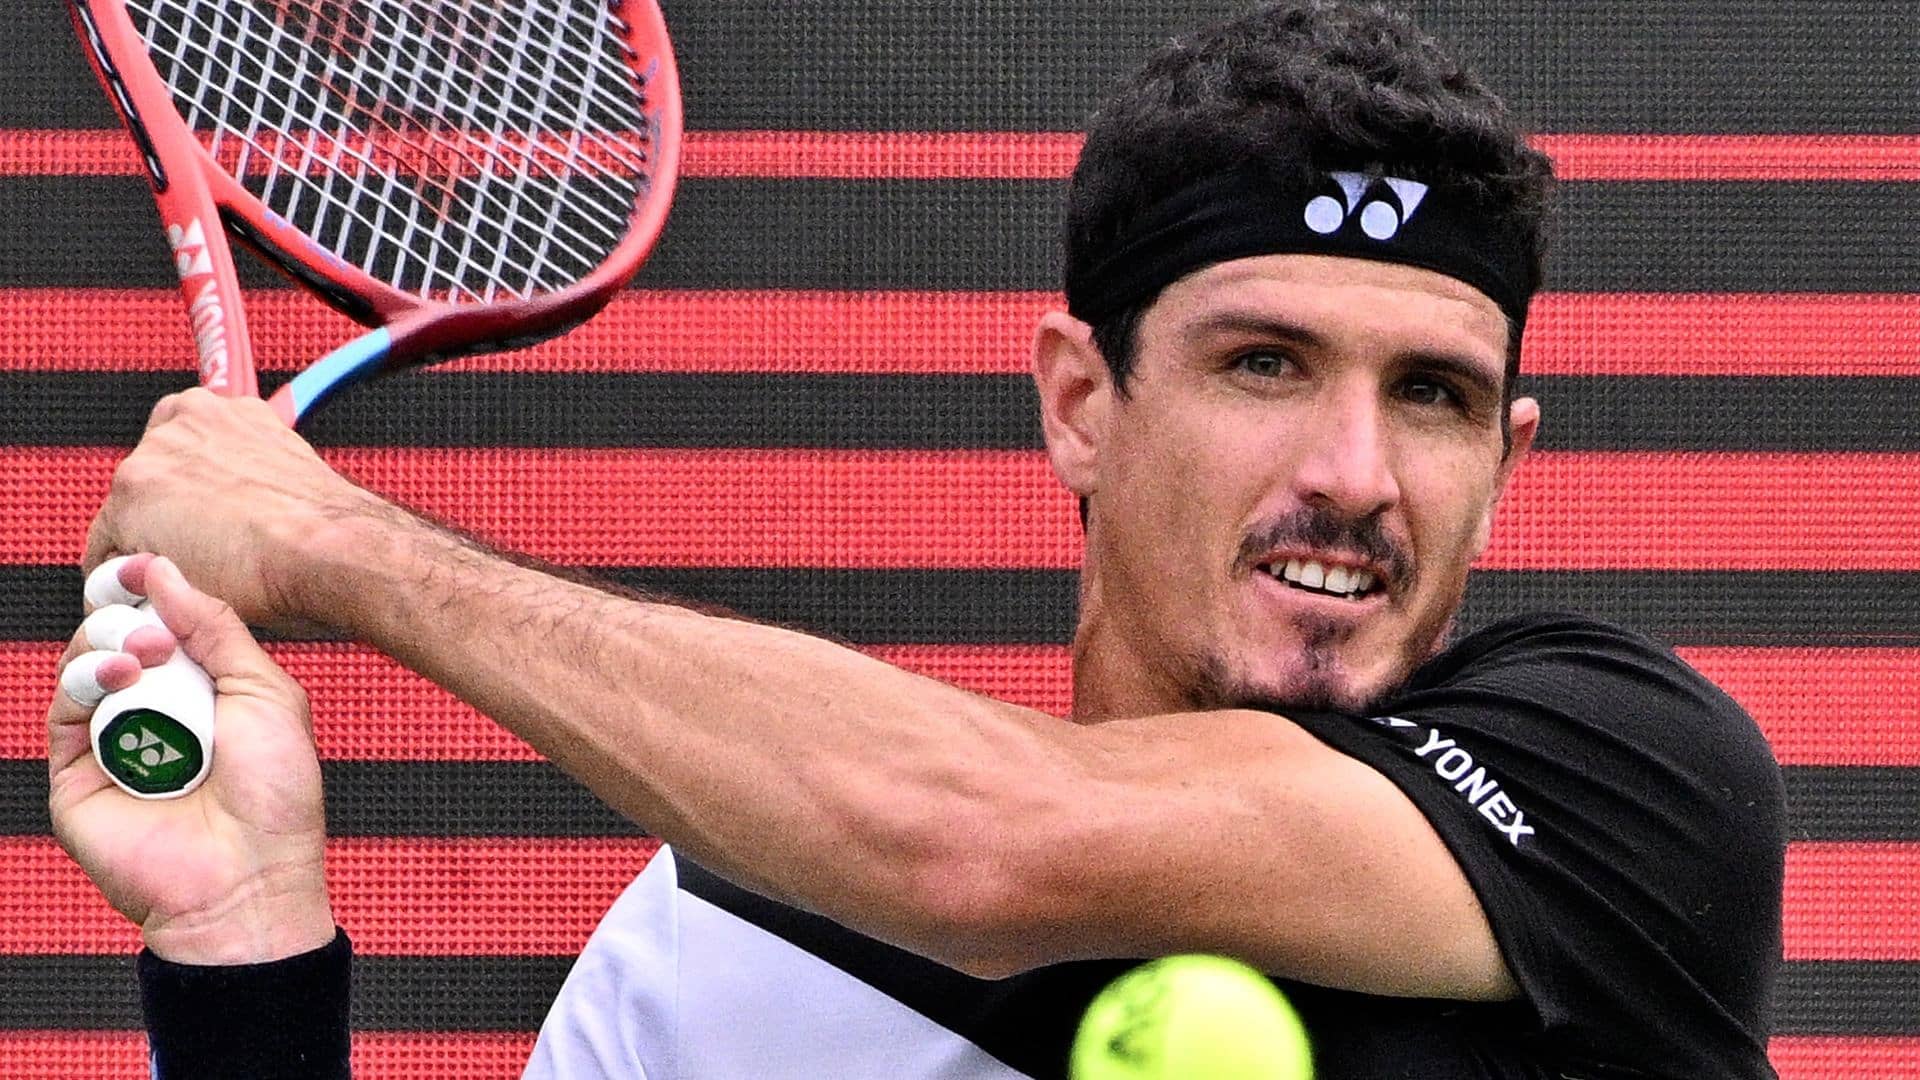 Emilio Gómez, hijo de un ex campeón de Grand Slam, se convierte en el quinto ecuatoriano en debutar en el Top-100 de individuales.